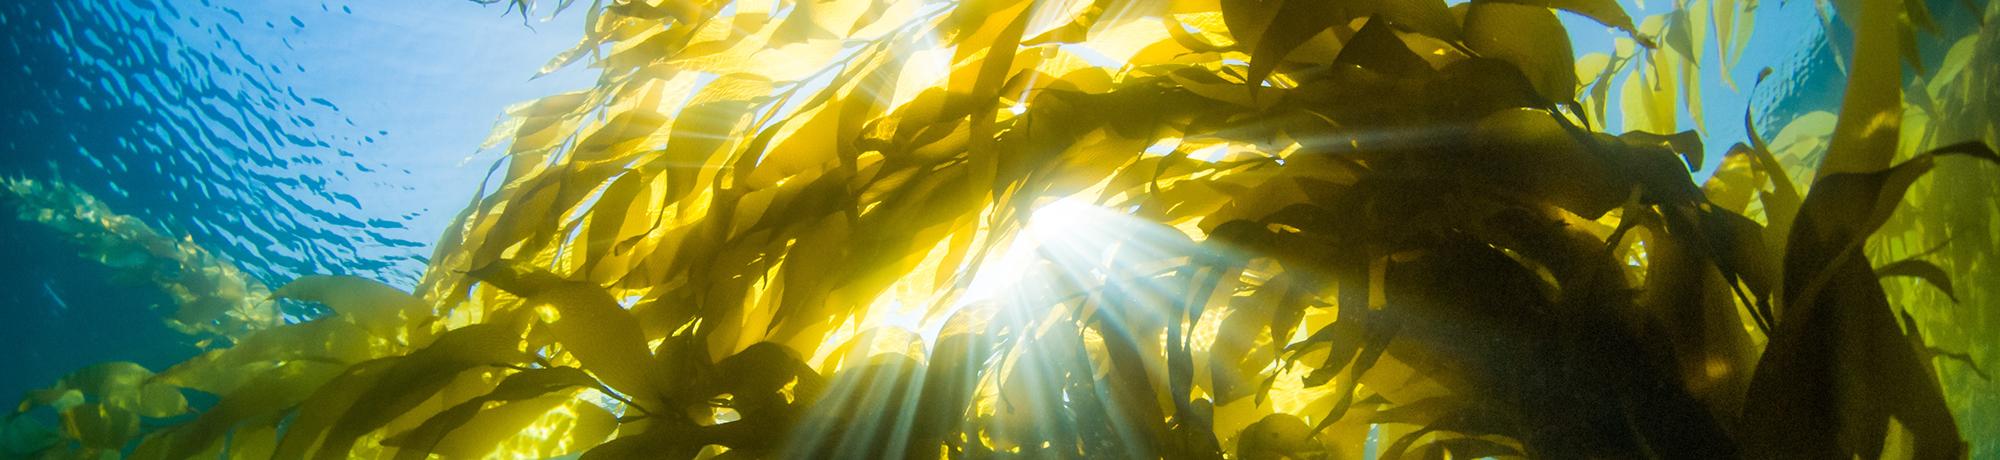 An underwater image of kelp leaves lit from behind